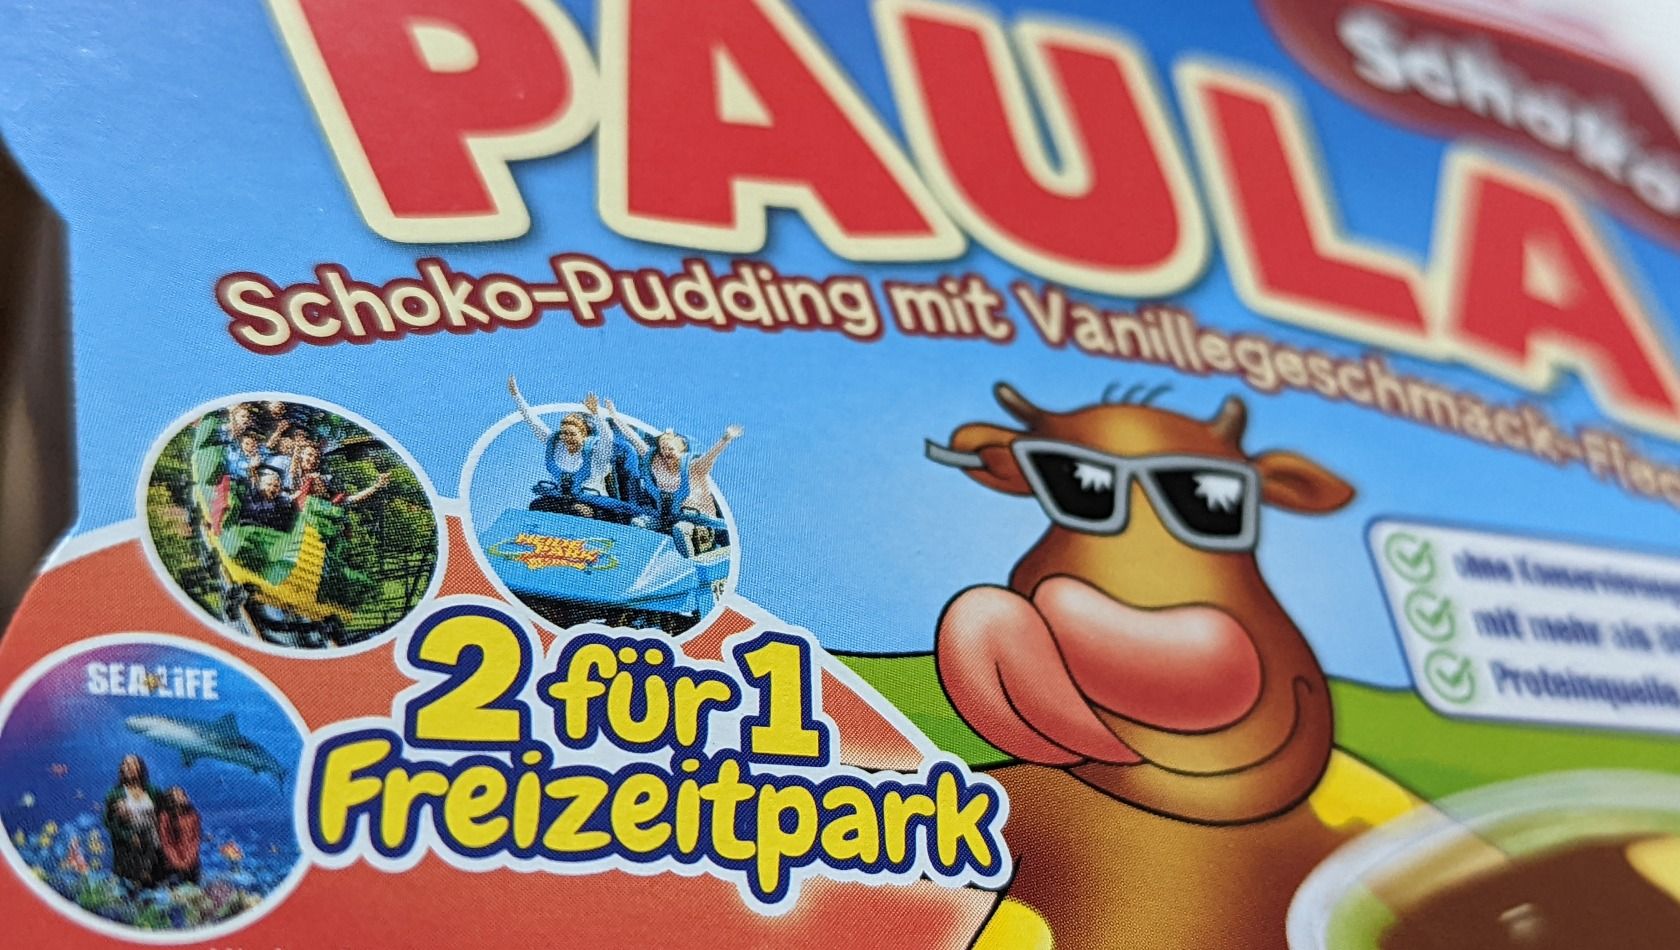 Paula Pudding 2 für 1 Freizeitpark Gutschein